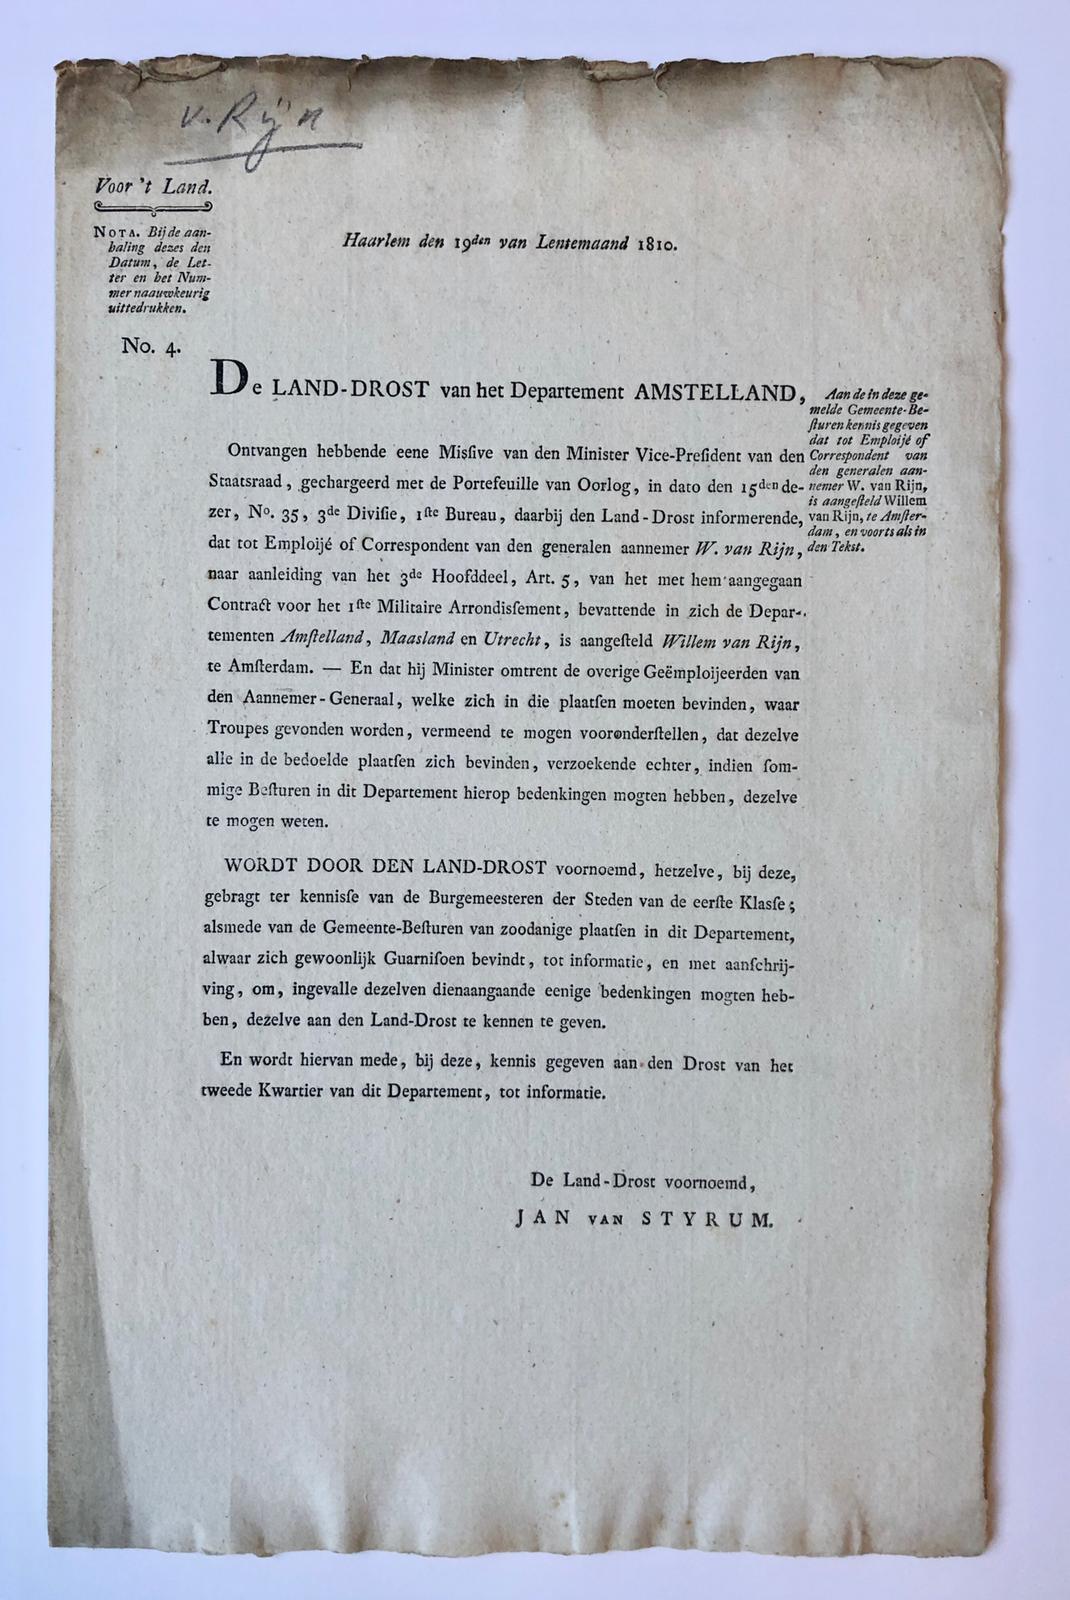 [PRINTED PUBLICATION, 1810, RIJN] Schrijven van de landdrost van Amstelland dd 19 lentemaand 1810 dat Willem van Rijn is aangesteld als aannemer voor militaire troepen, 1 pag., folio, gedrukt.